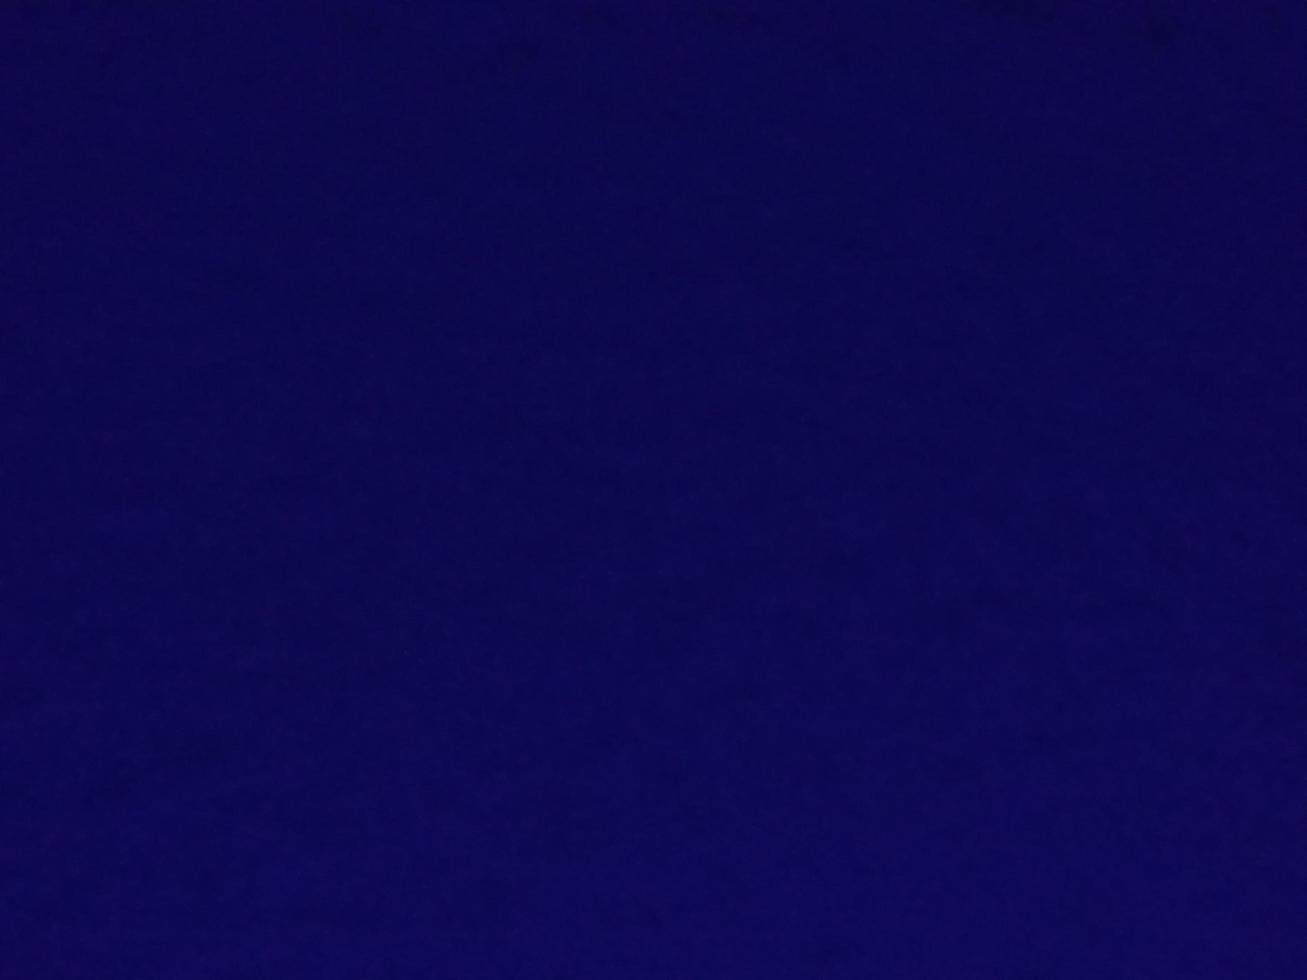 abstraction bleu foncé dans l'obscurité utilisée pour concevoir des arrière-plans et des fonds d'écran. photo